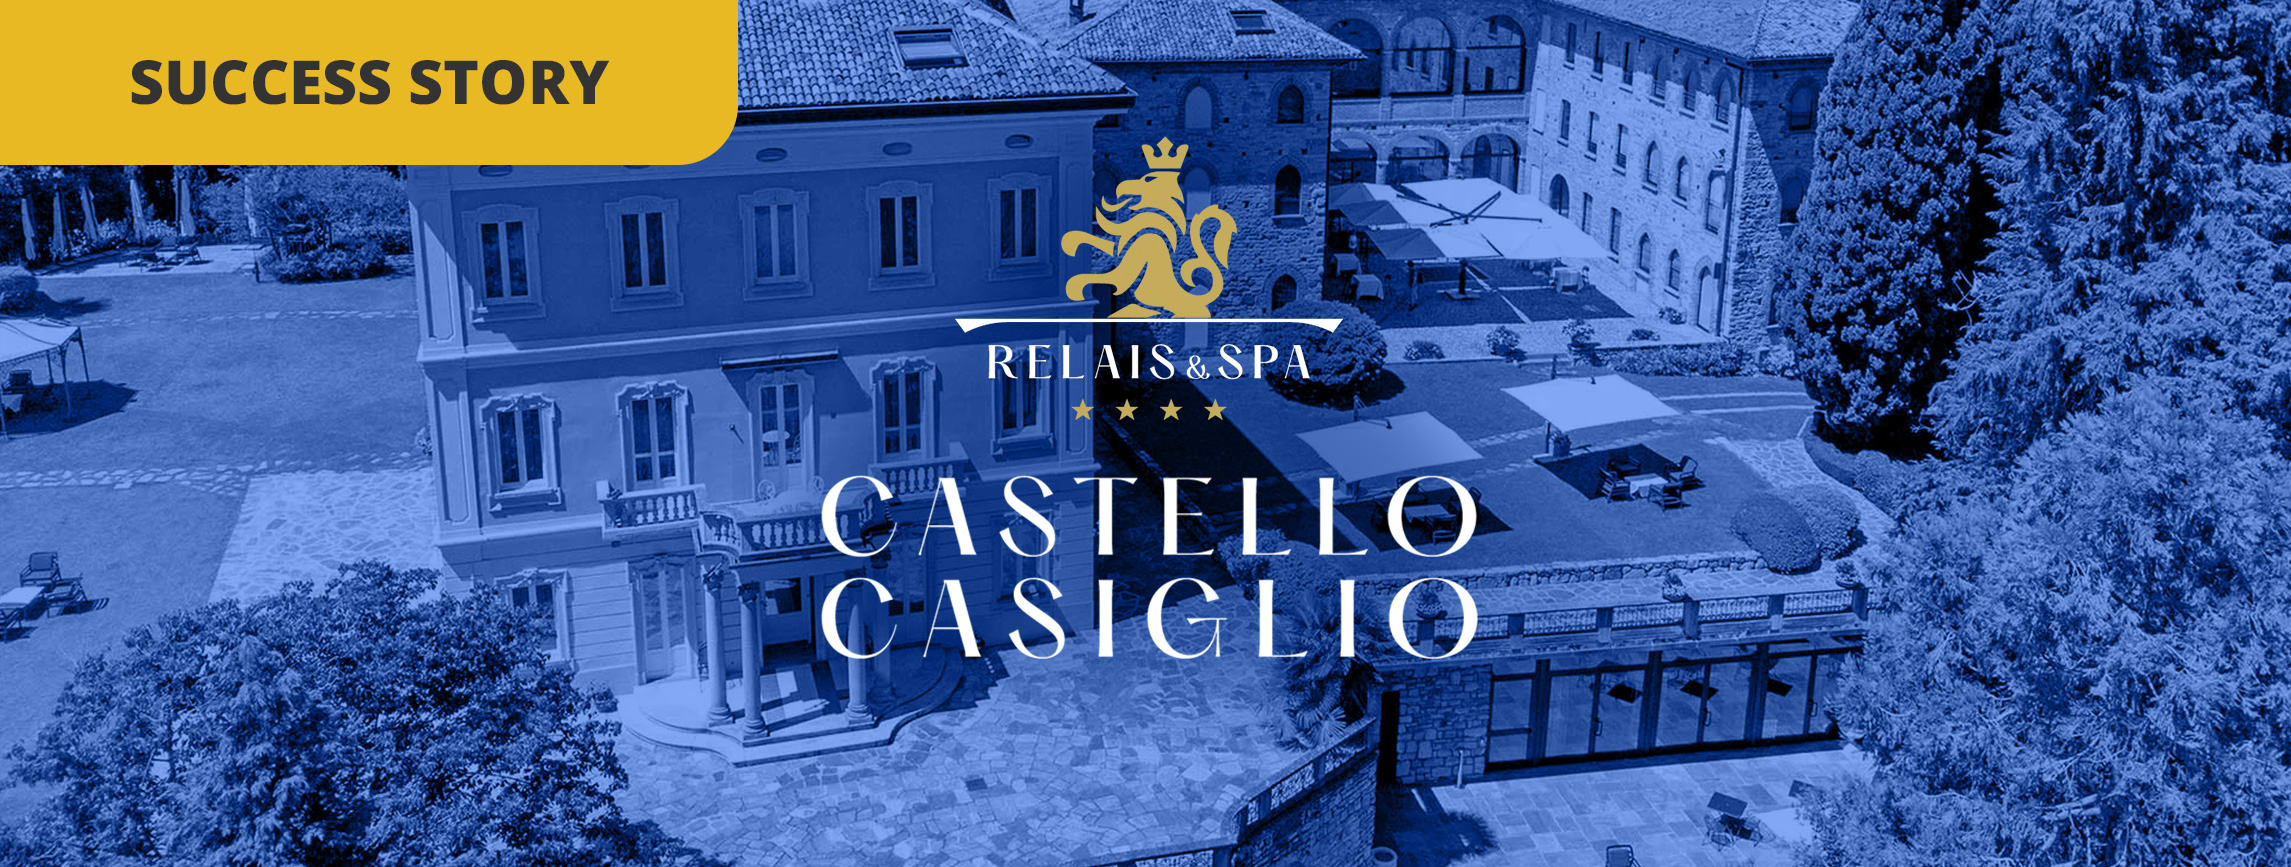 Comment le Relais Castello di Casiglio a atteint le rang n°1 sur Booking.com